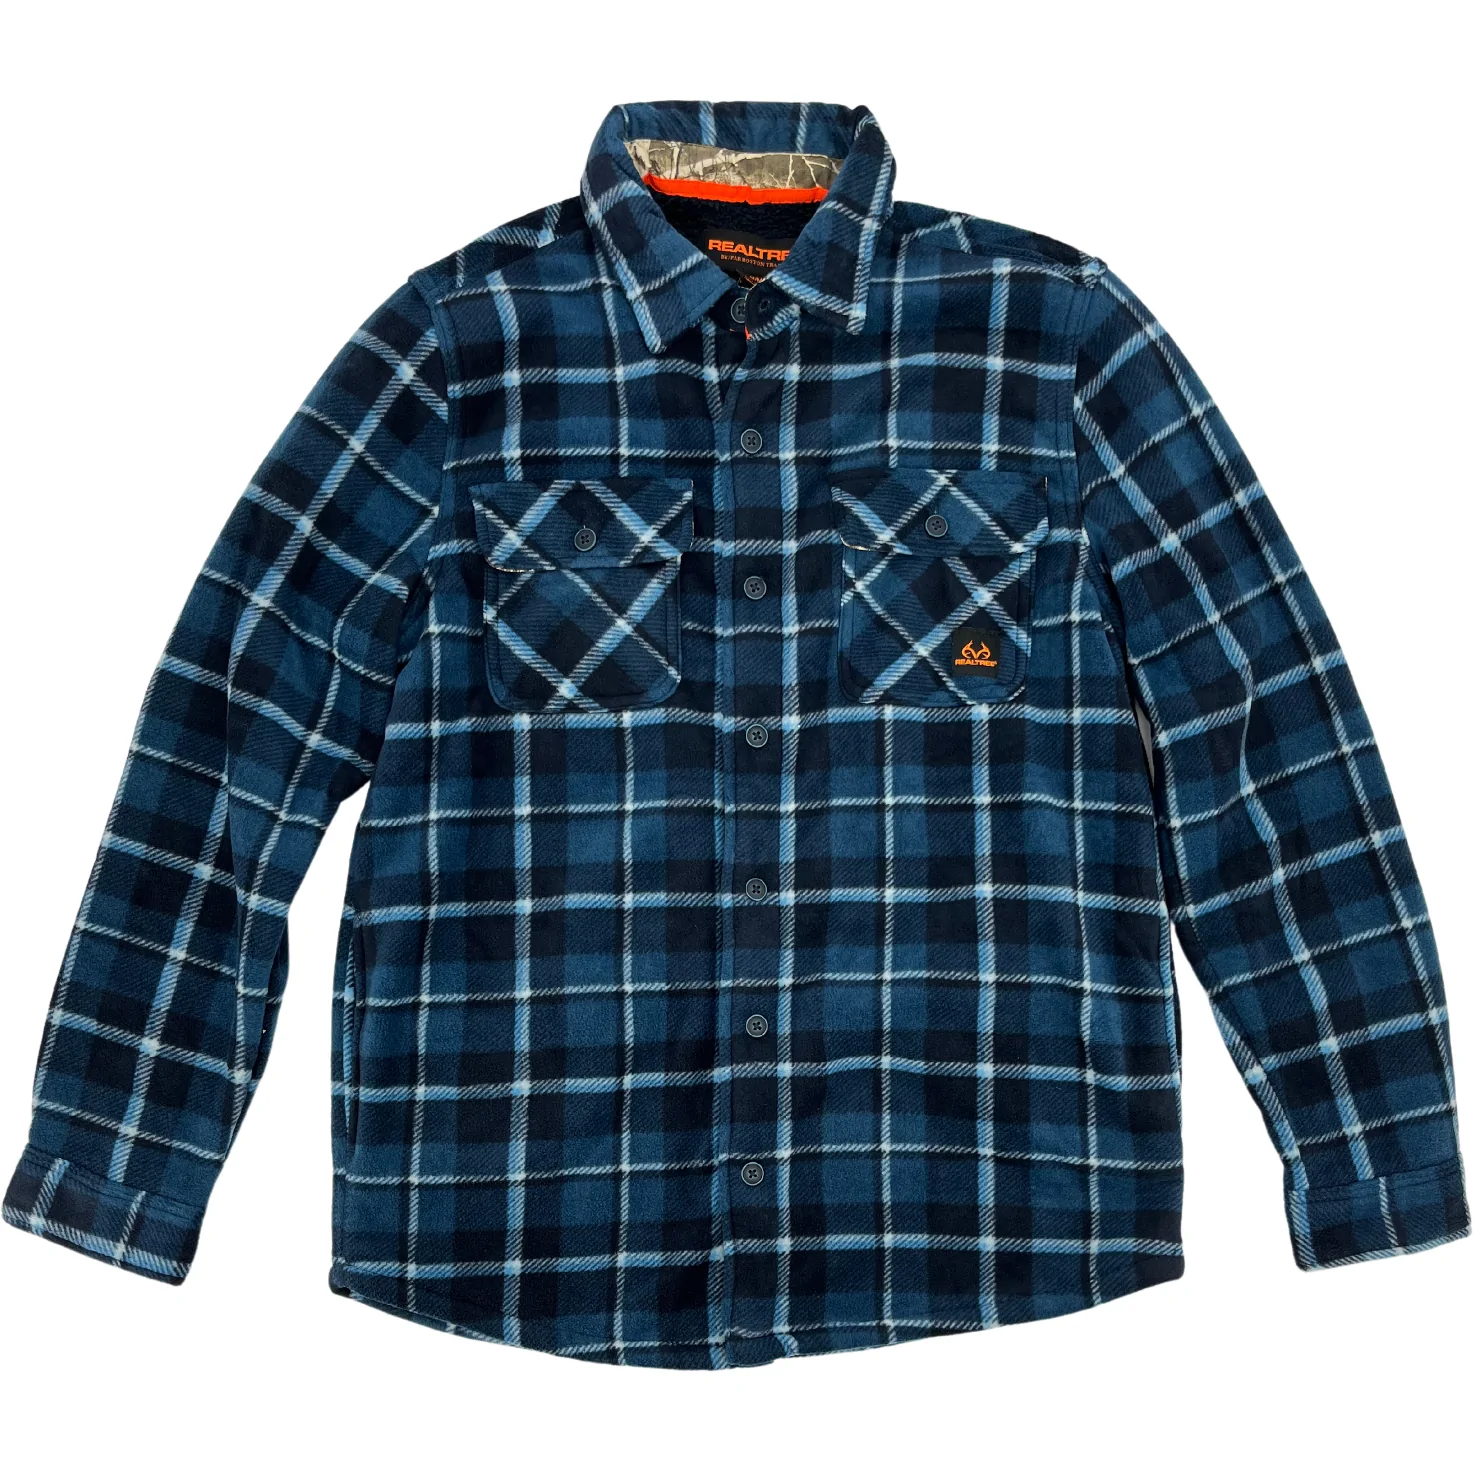 Realtree Men's Jacket: Work Jacket / Fleece Jacket / Blue Plaid / Various Sizes